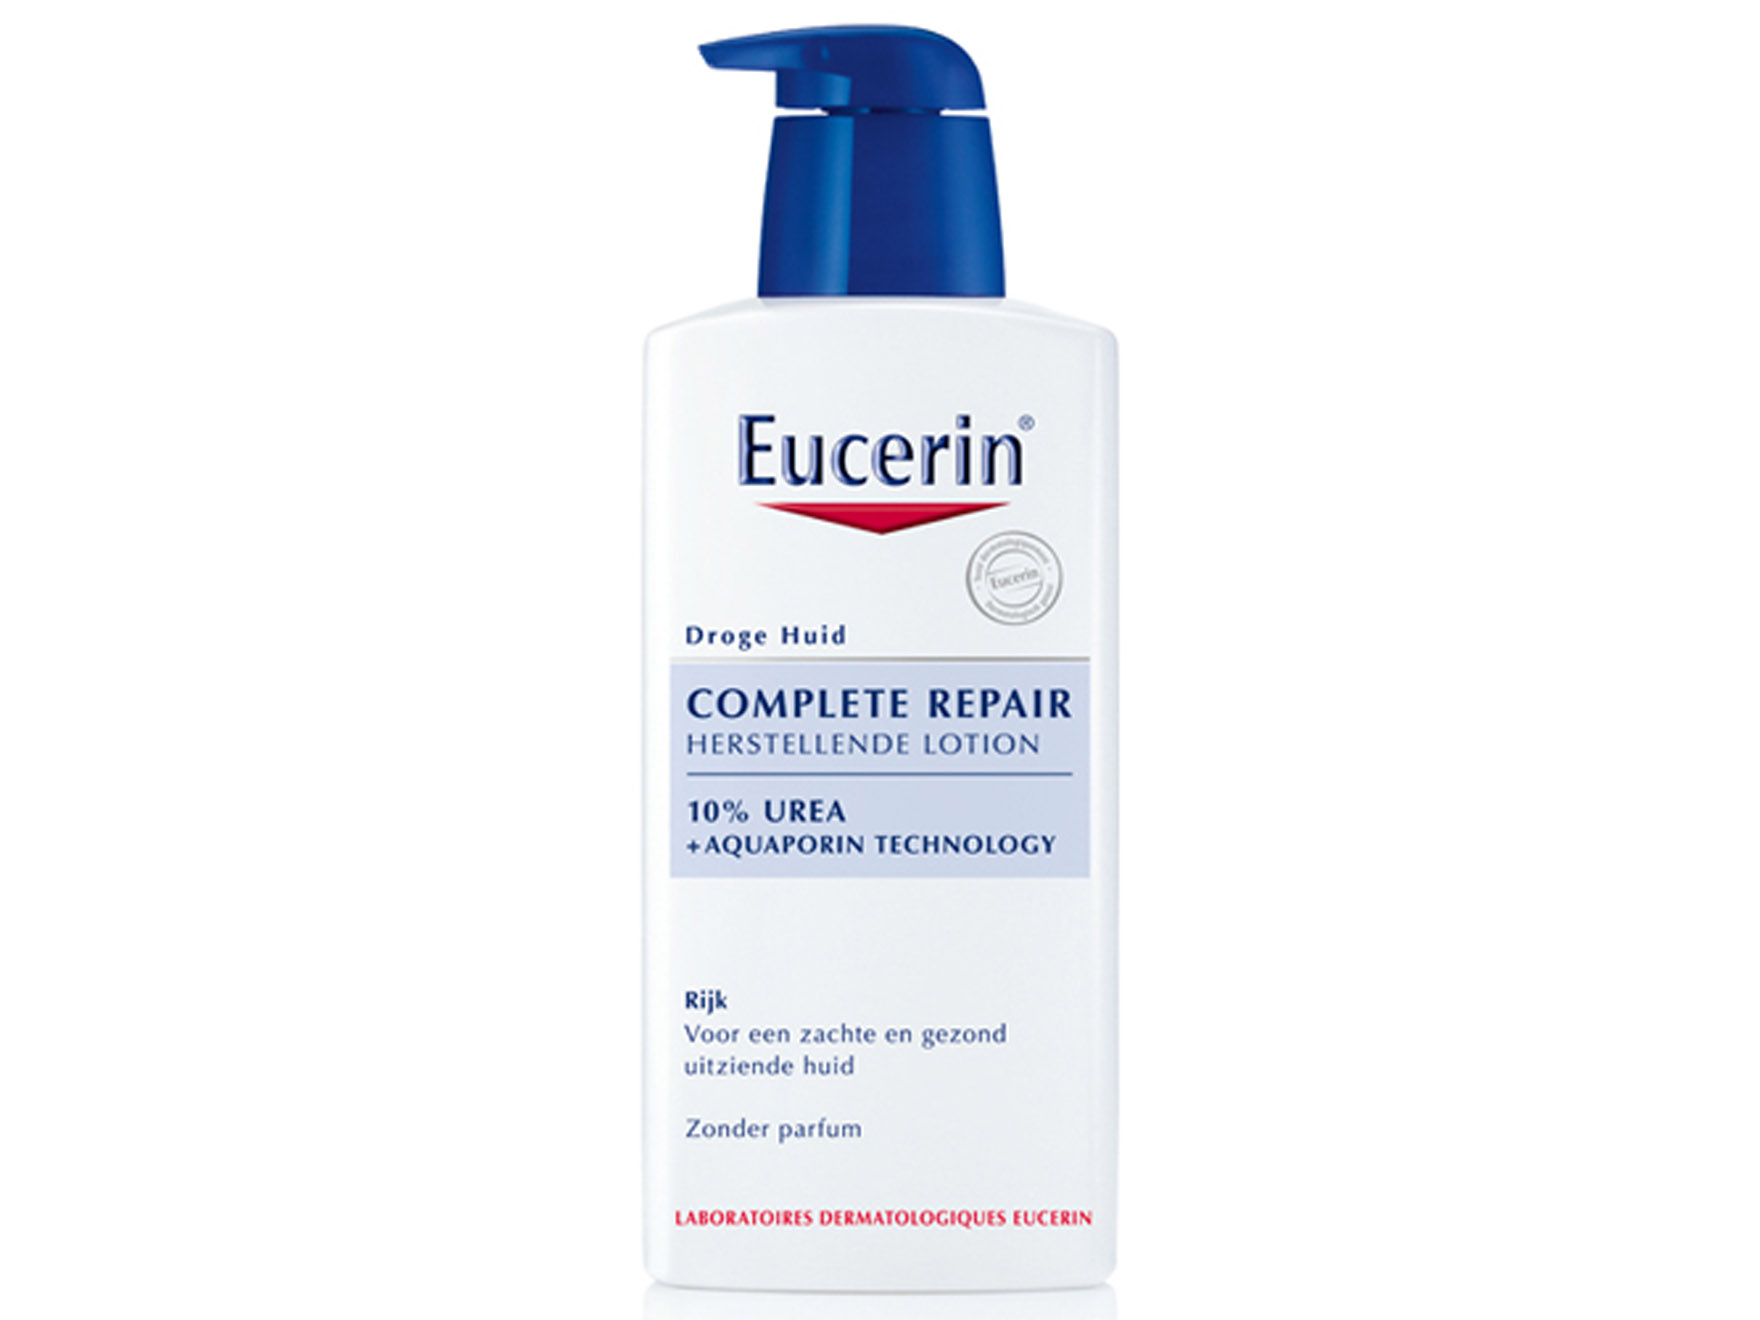 Eucerin UreaRepair plus herstellende kalmerende hoofdhuidbehandeling lotion 10% - 400 ml - 1 st